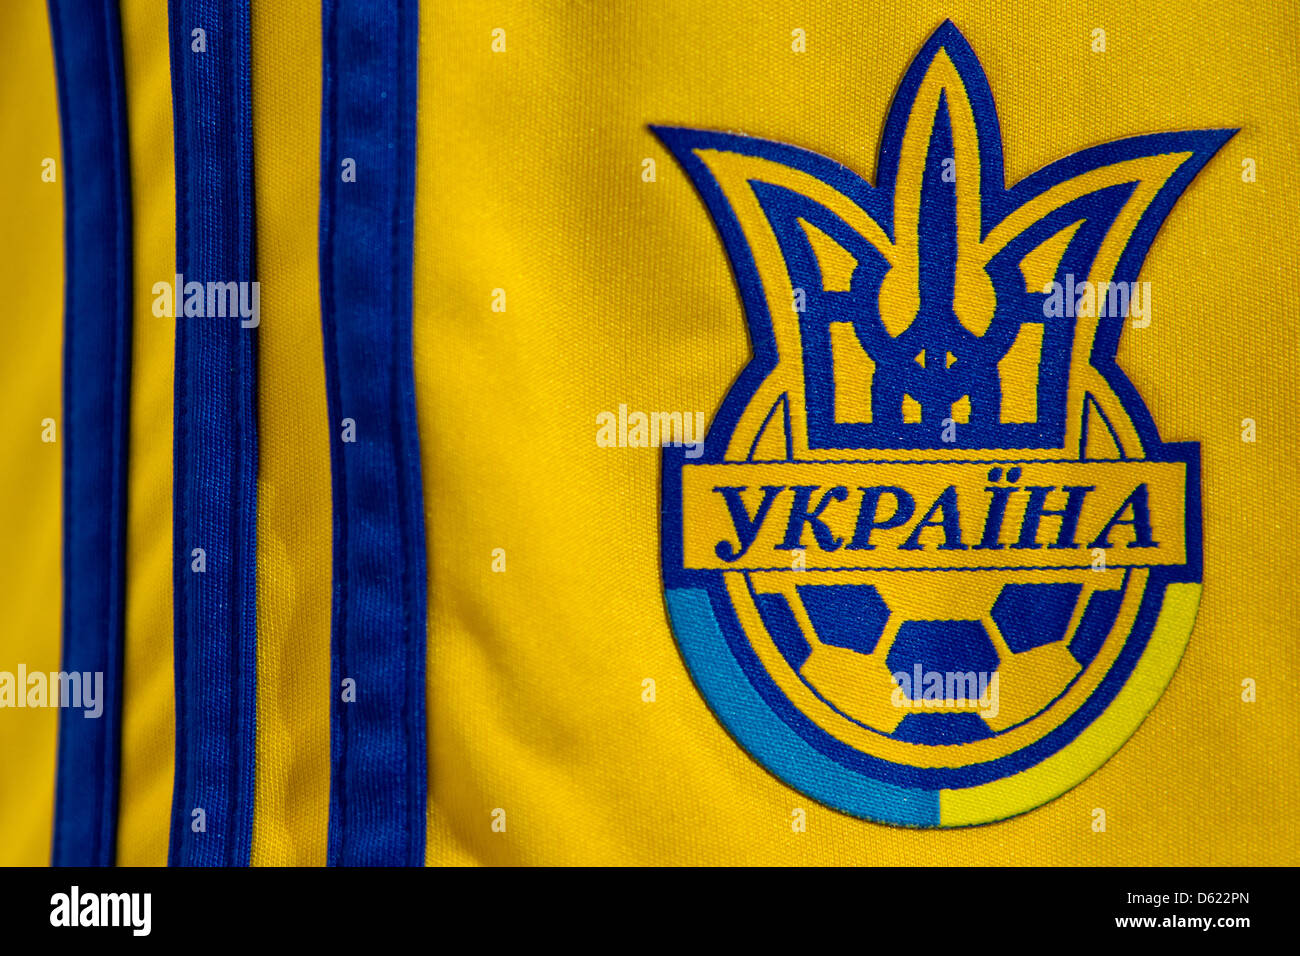 adidas ukraine jersey